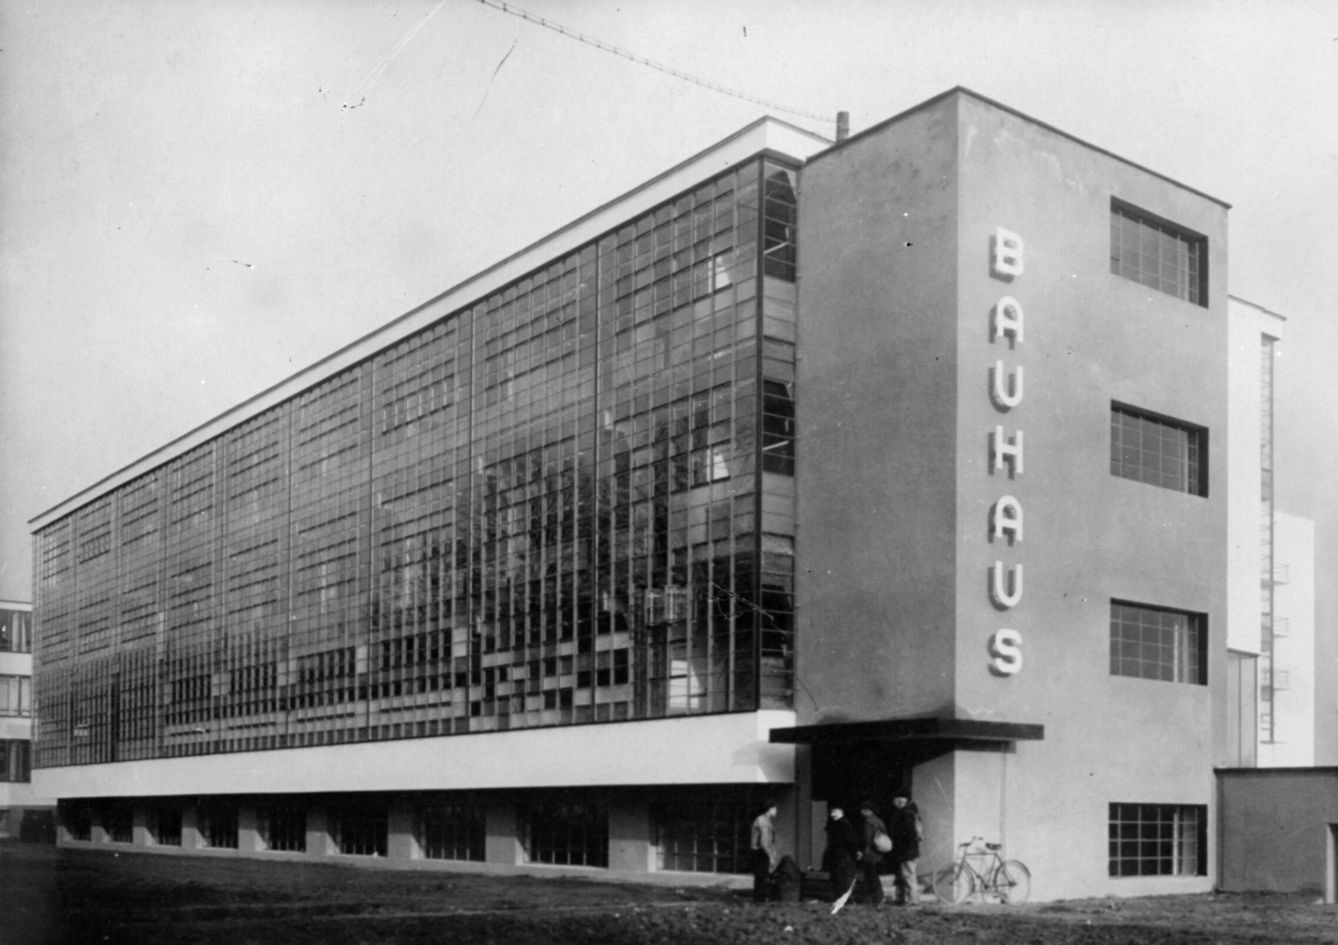 Fachada del edificio Bauhaus en Dessau, diseñado por el arquitecto Walter Gropius en 1926. (Getty Images)